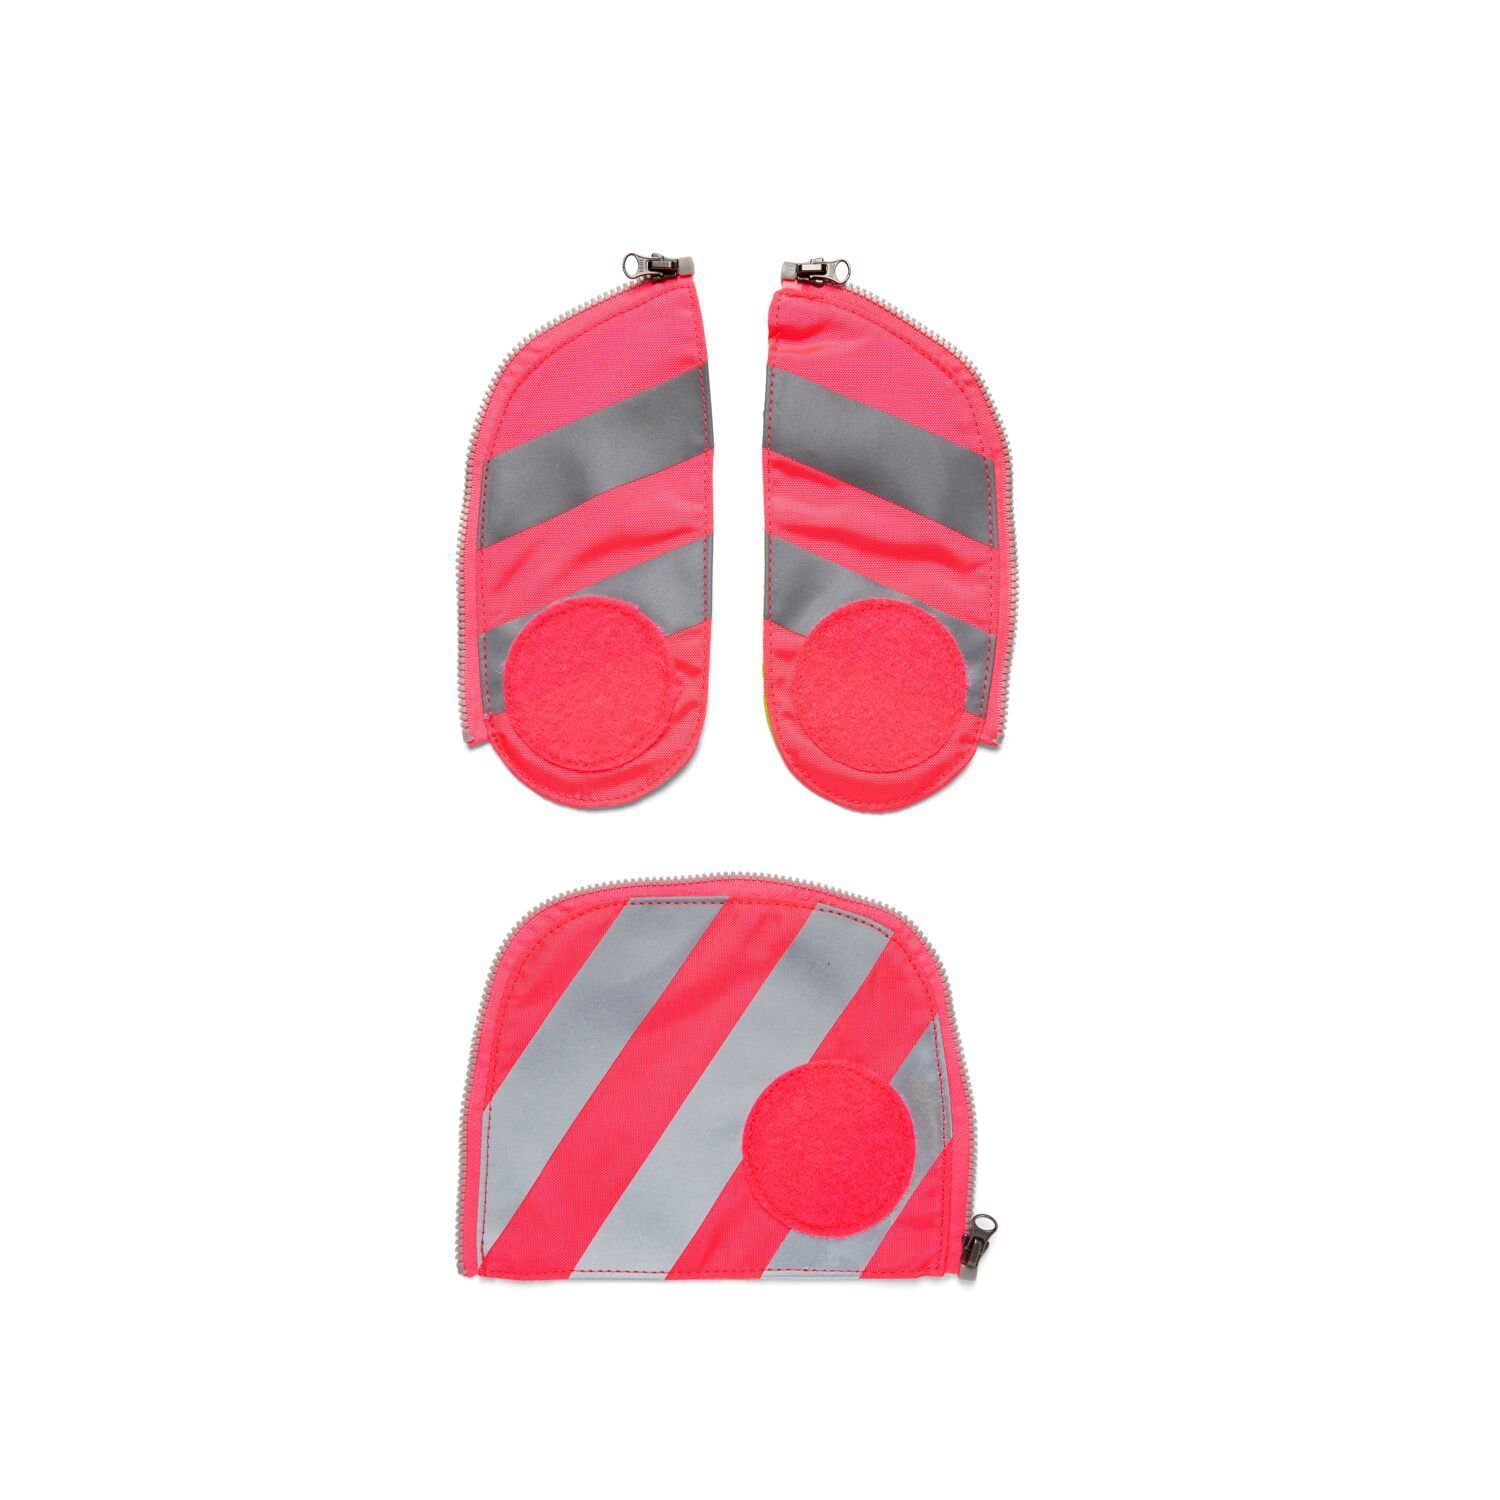 Pink Reflektorstreifen ergobag (3-teilig), Zip-Set Sichtbarkeit mit Schulranzen Stoff, Fluo fluoreszierender Pink 002-511 Sicherheits-Set